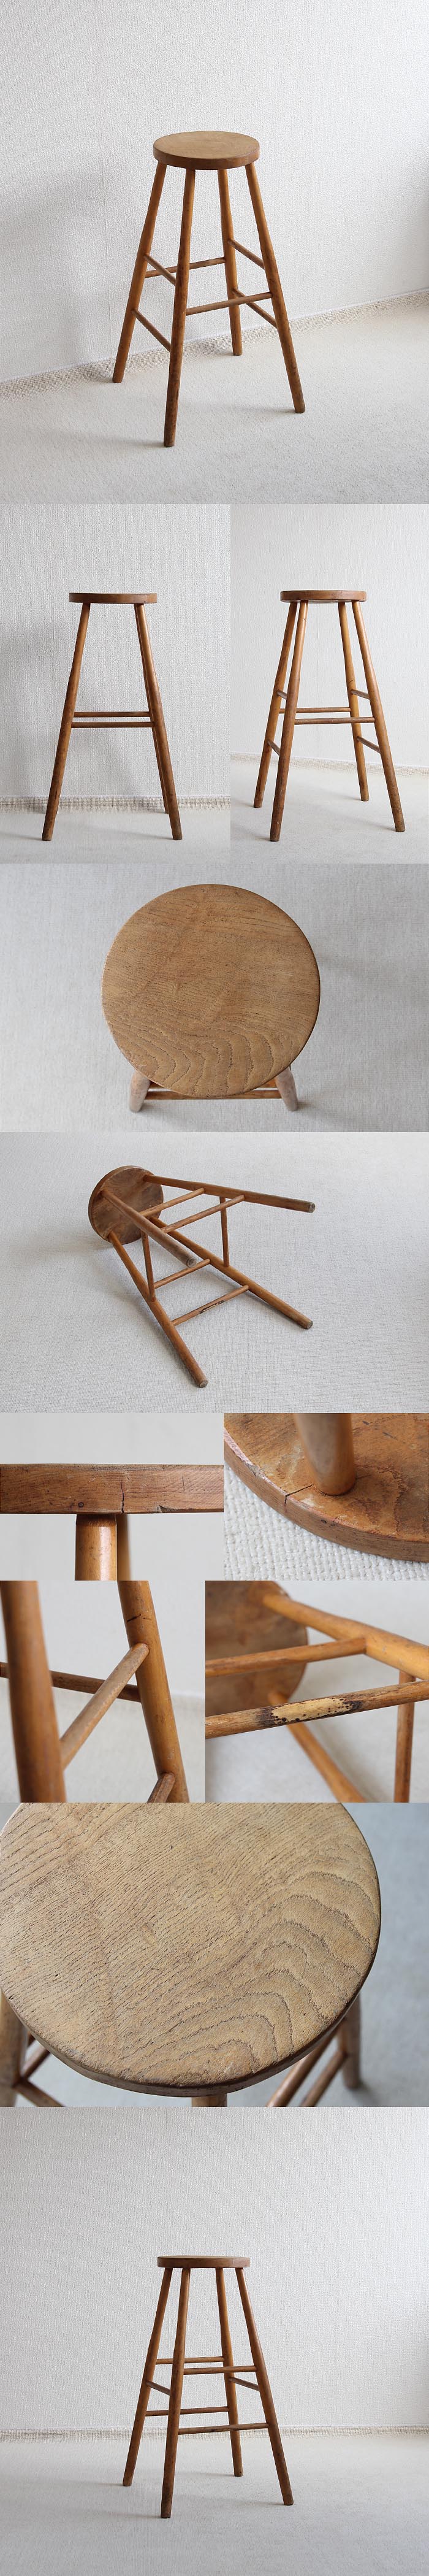 イギリス アンティーク ハイスツール 木製椅子 カウンターチェア 家具「花台にも」V-415